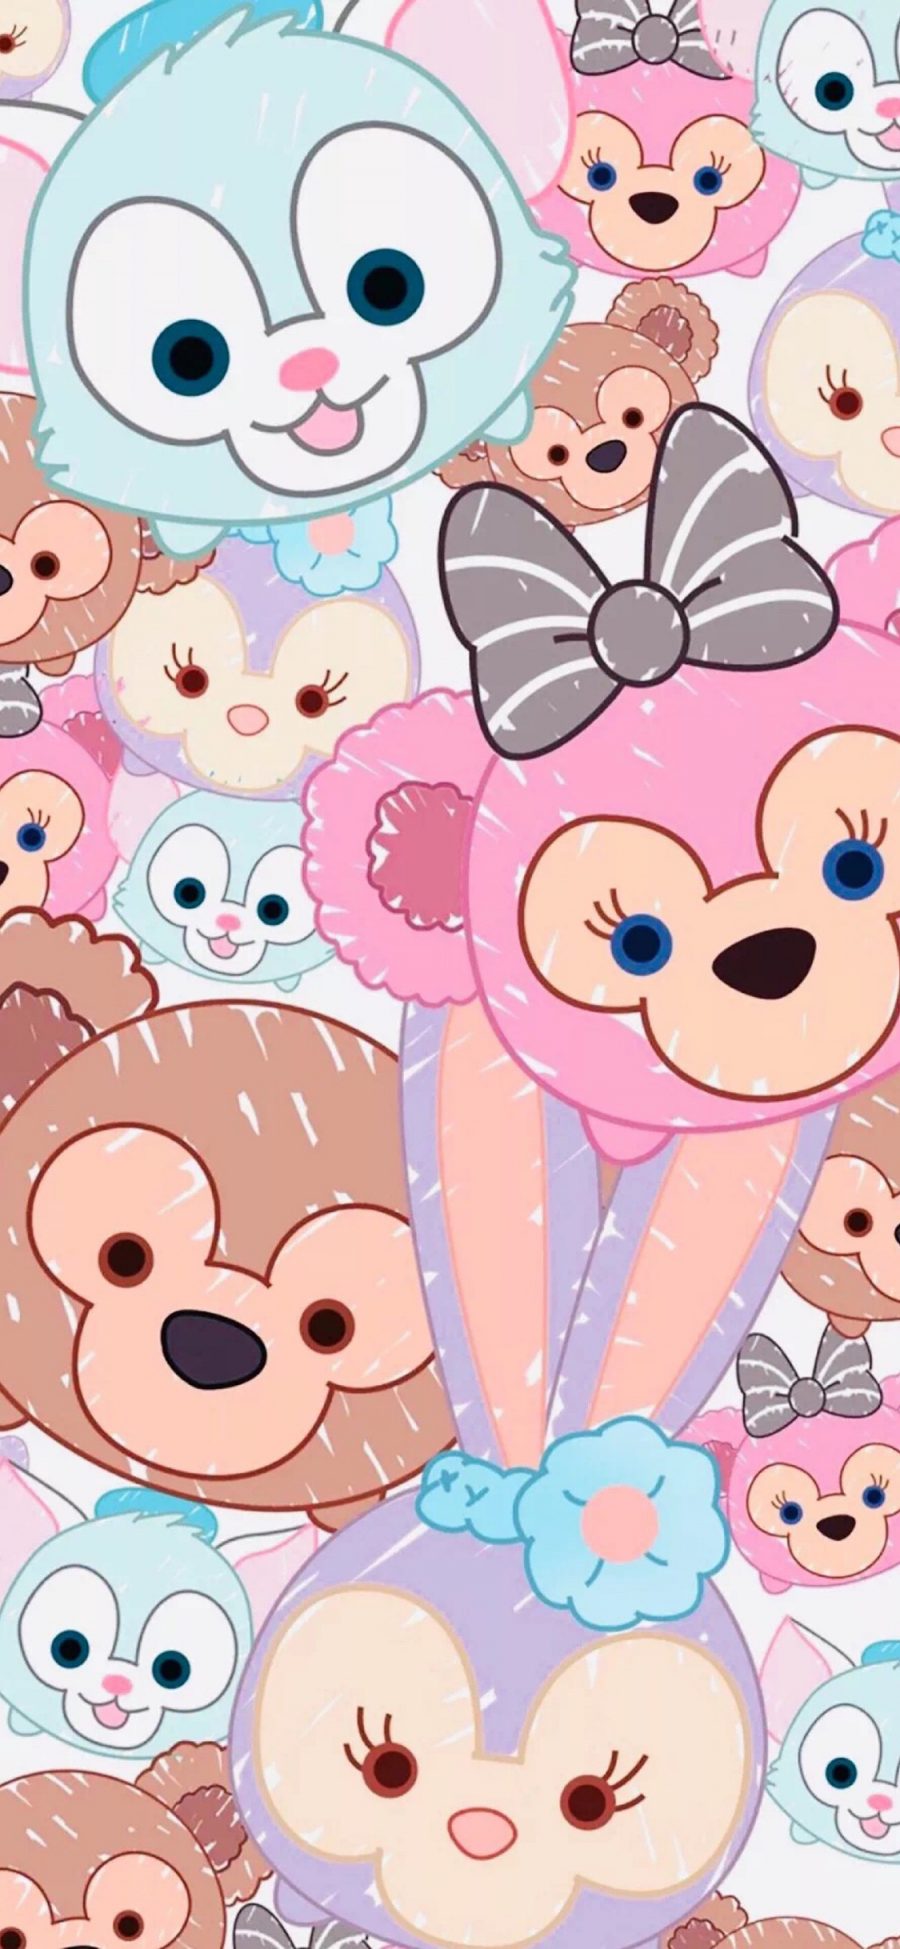 [2436×1125]迪士尼 Duffy 达菲熊 和朋友 苹果手机动漫壁纸图片